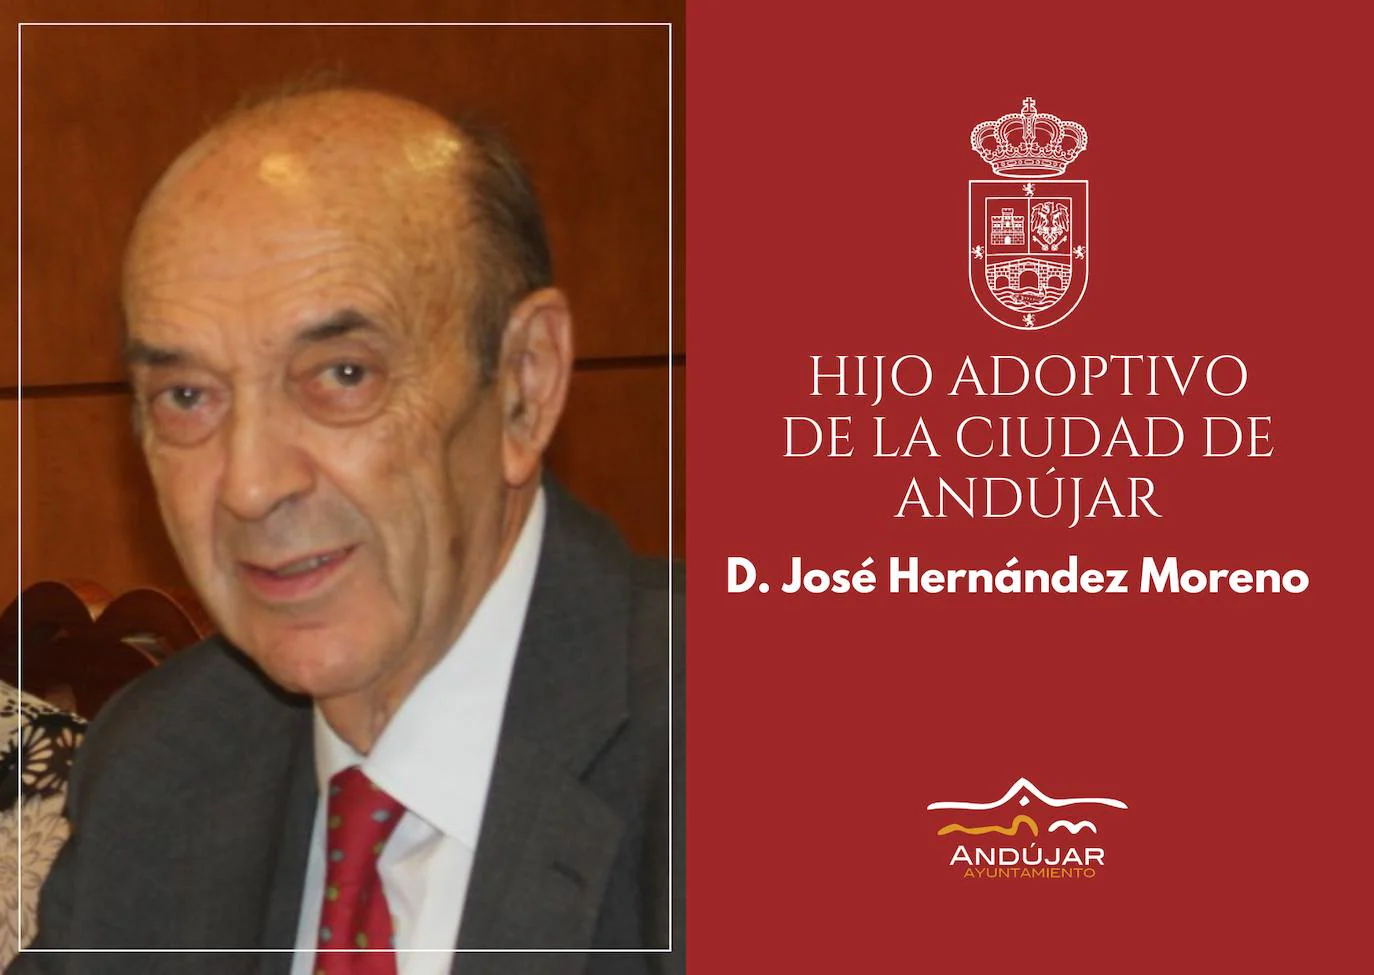 El Ayuntamiento de Andújar concederá el título de Hijo Adoptivo de Andújar al doctor José Hernández Moreno